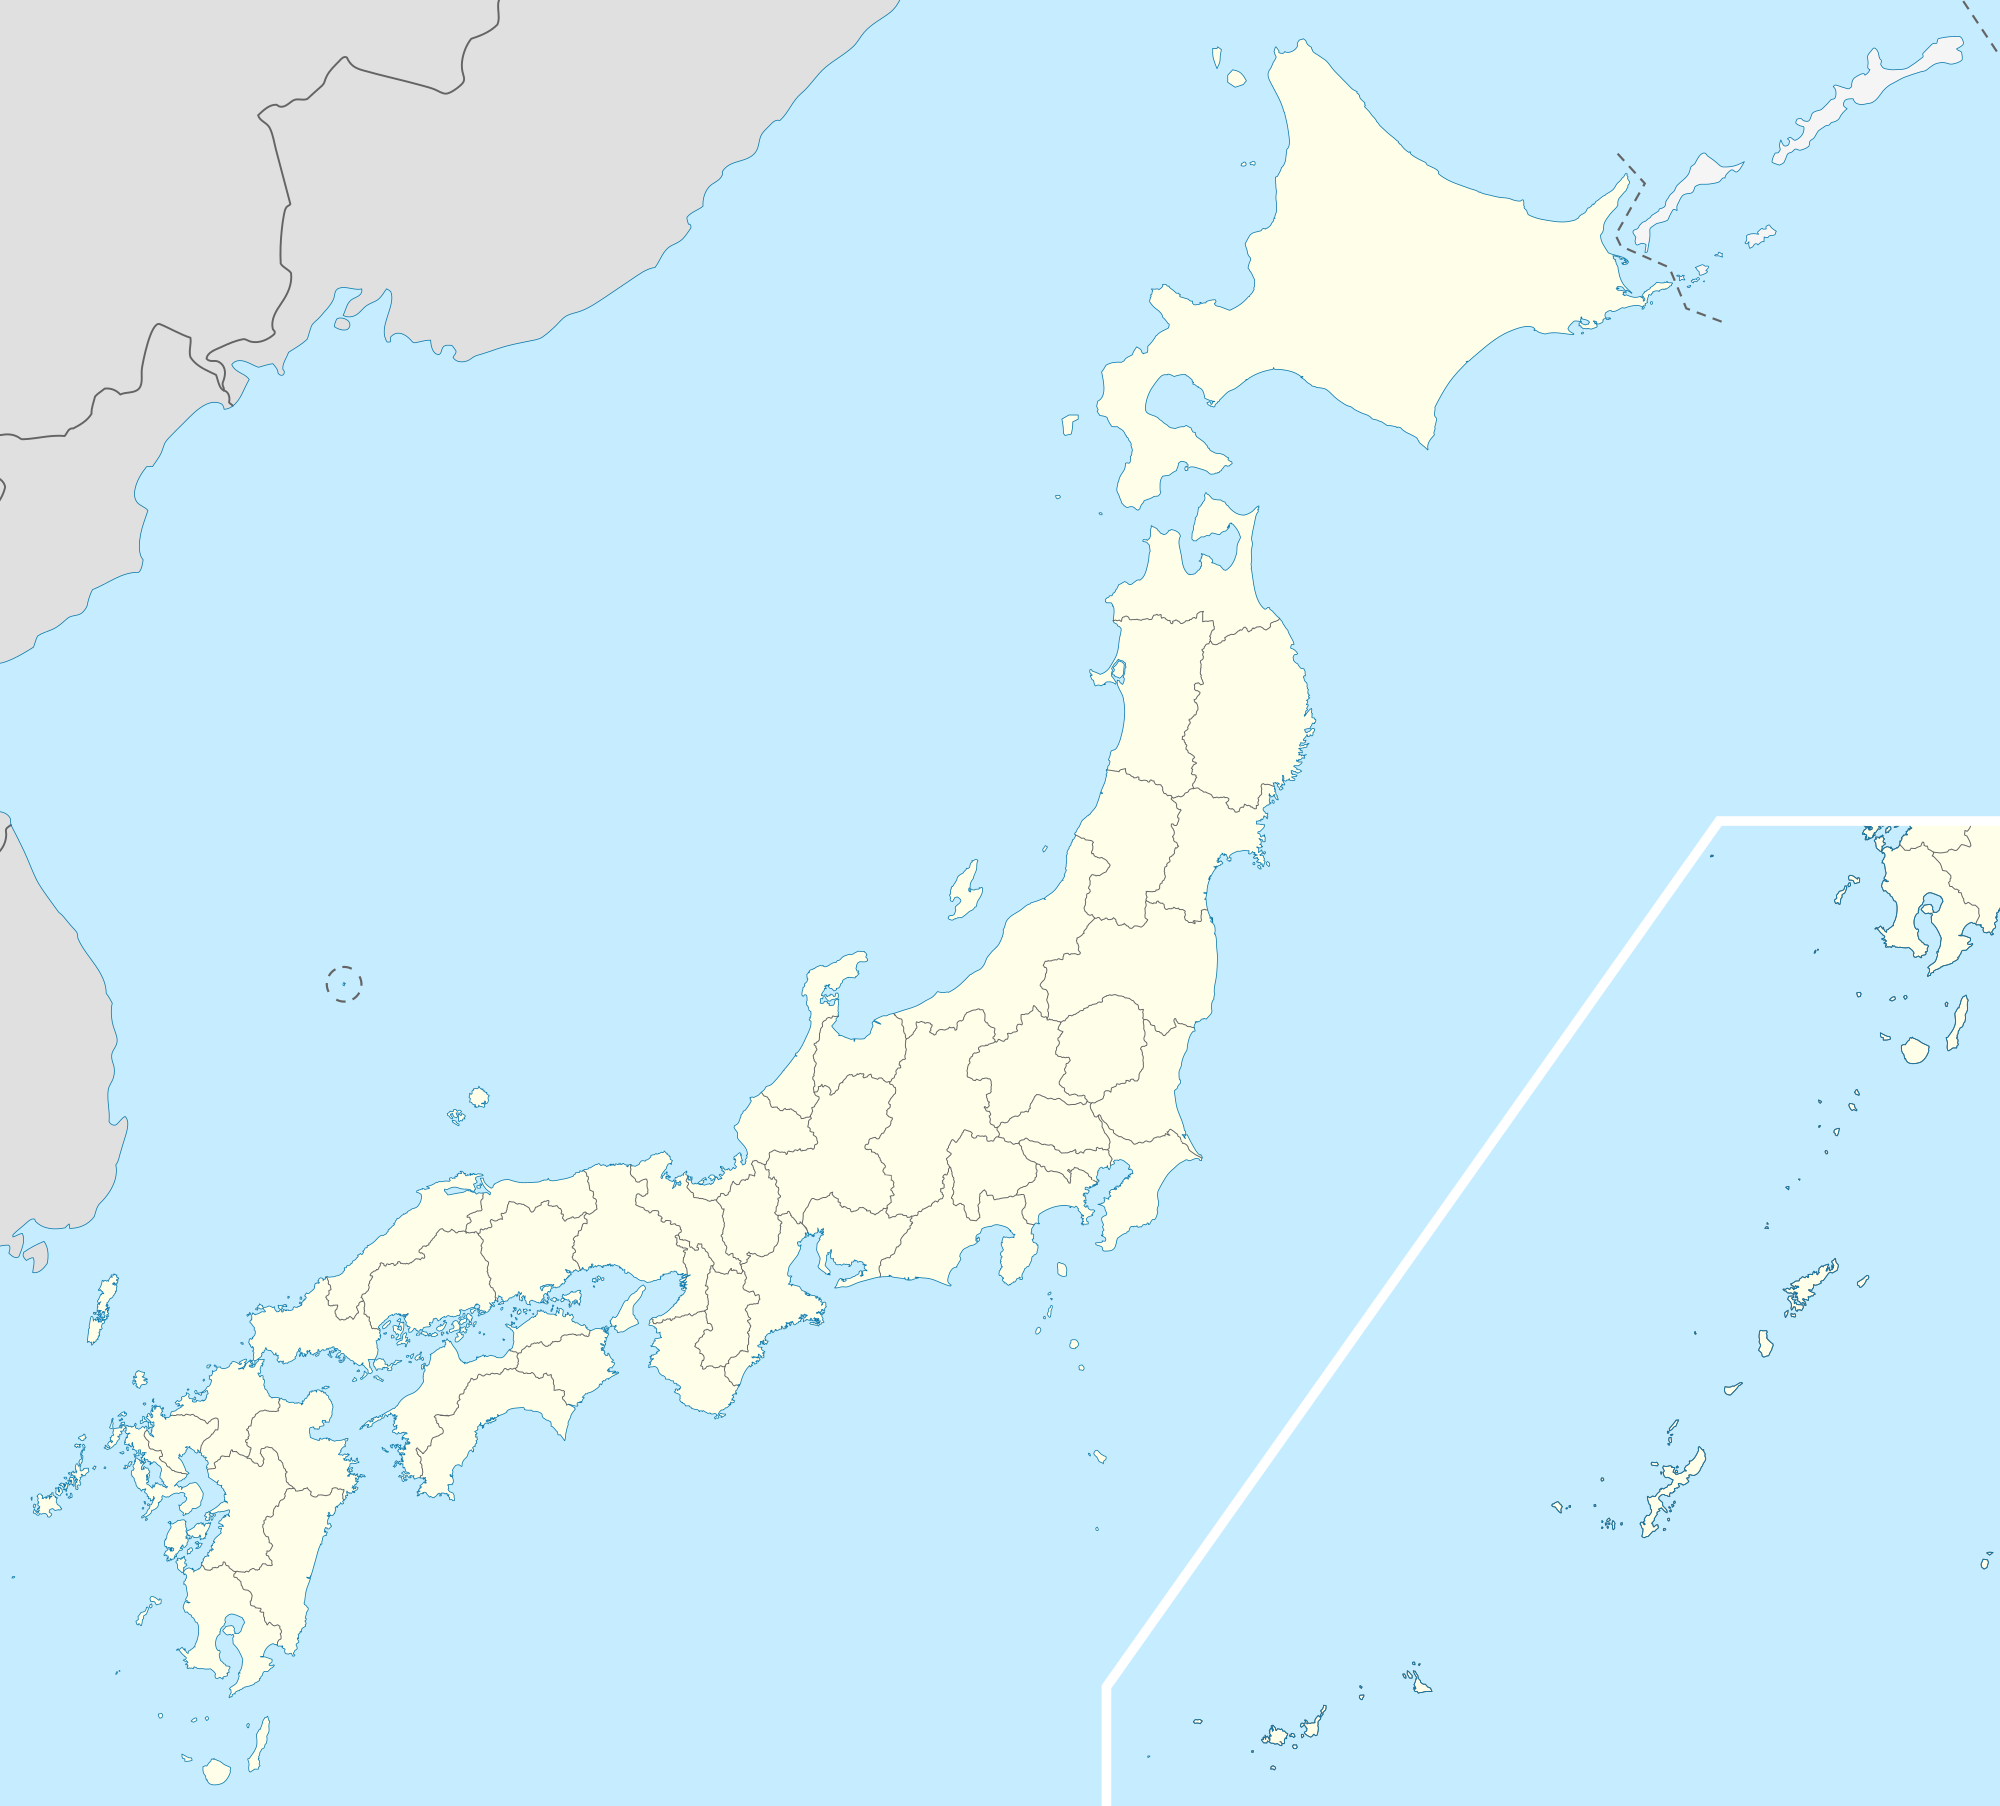 大阪 is located in Japan